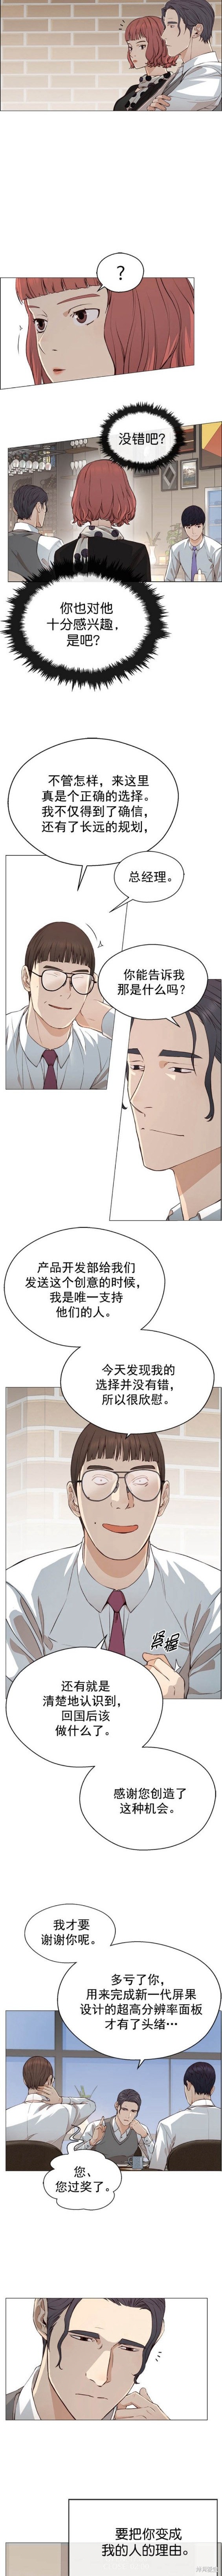 男子汉漫画,第136话3图